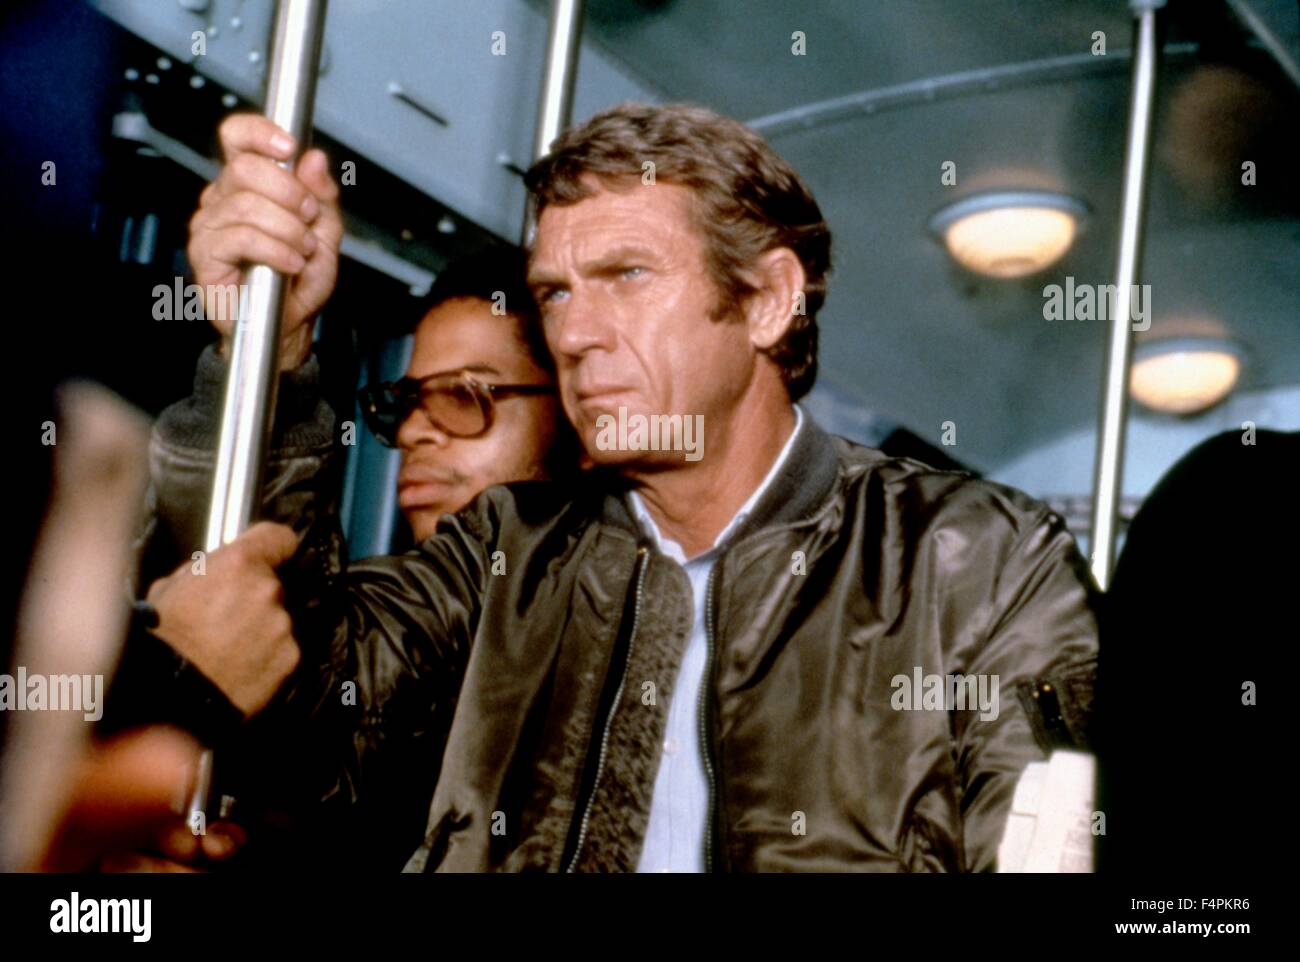 Steve McQueen / El Cazador / 1980 dirigida por Buzz Kulik [Paramount Pictures] Foto de stock